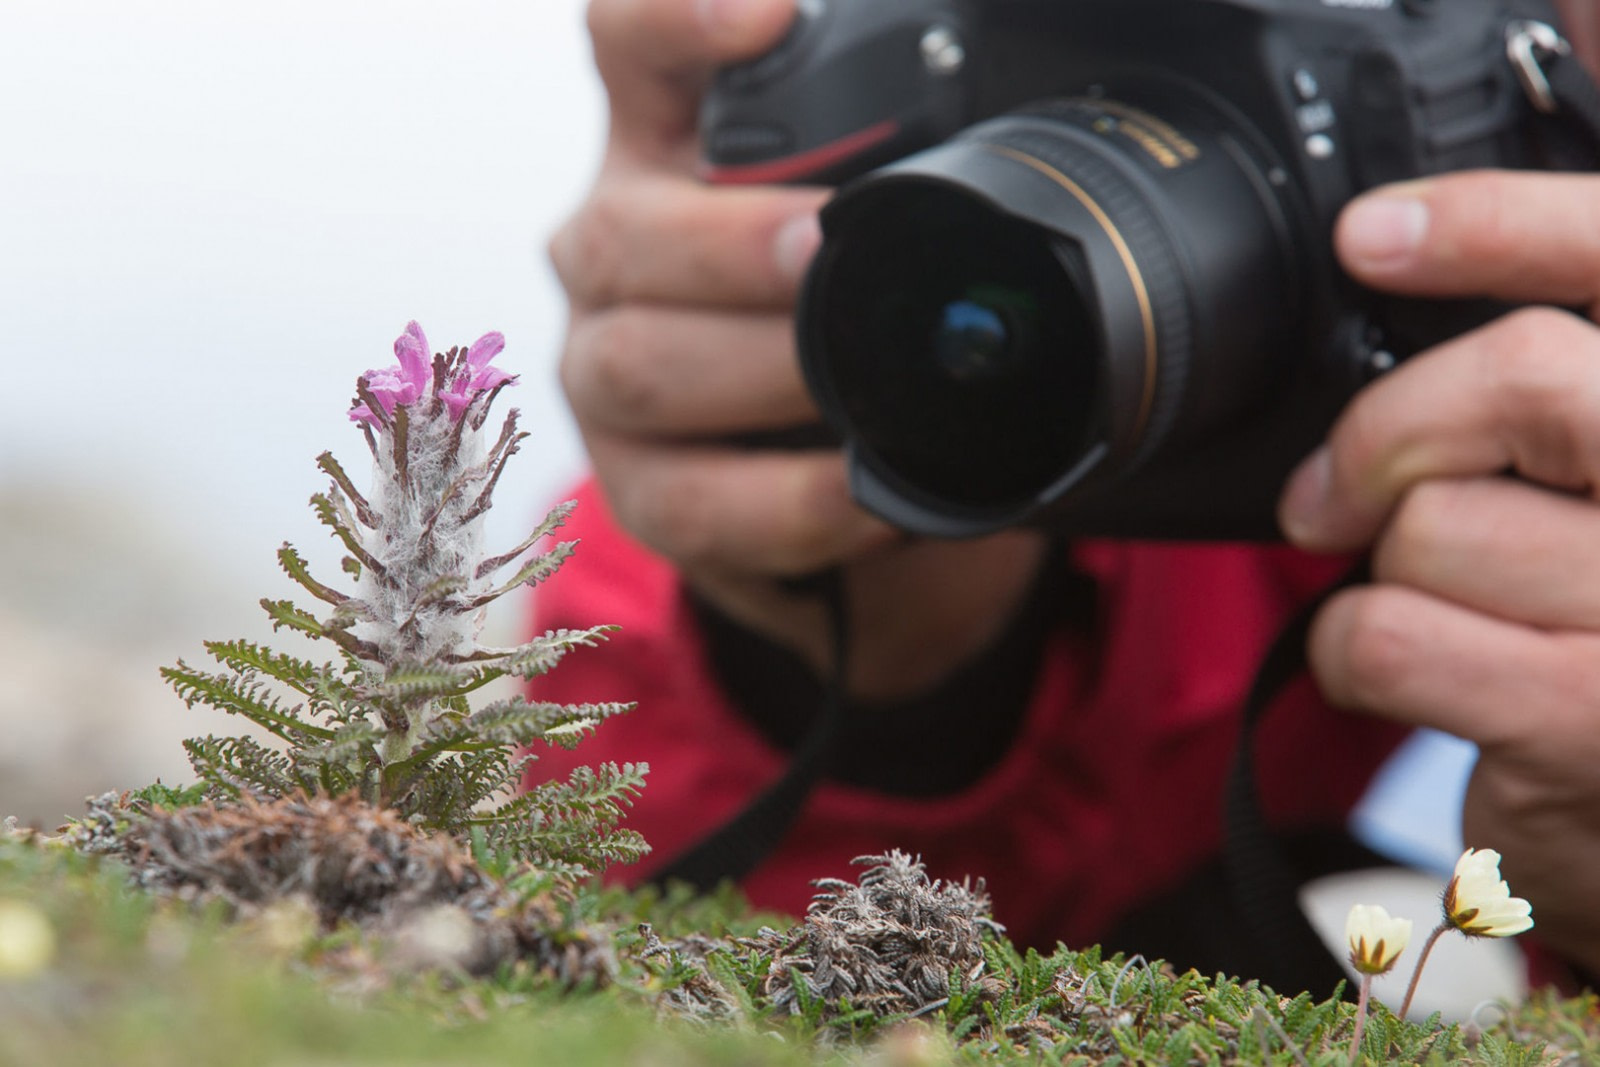 Photographing a Spitsbergen flower, Wolly Lousewort | Liefdefjord, Spitsbergen